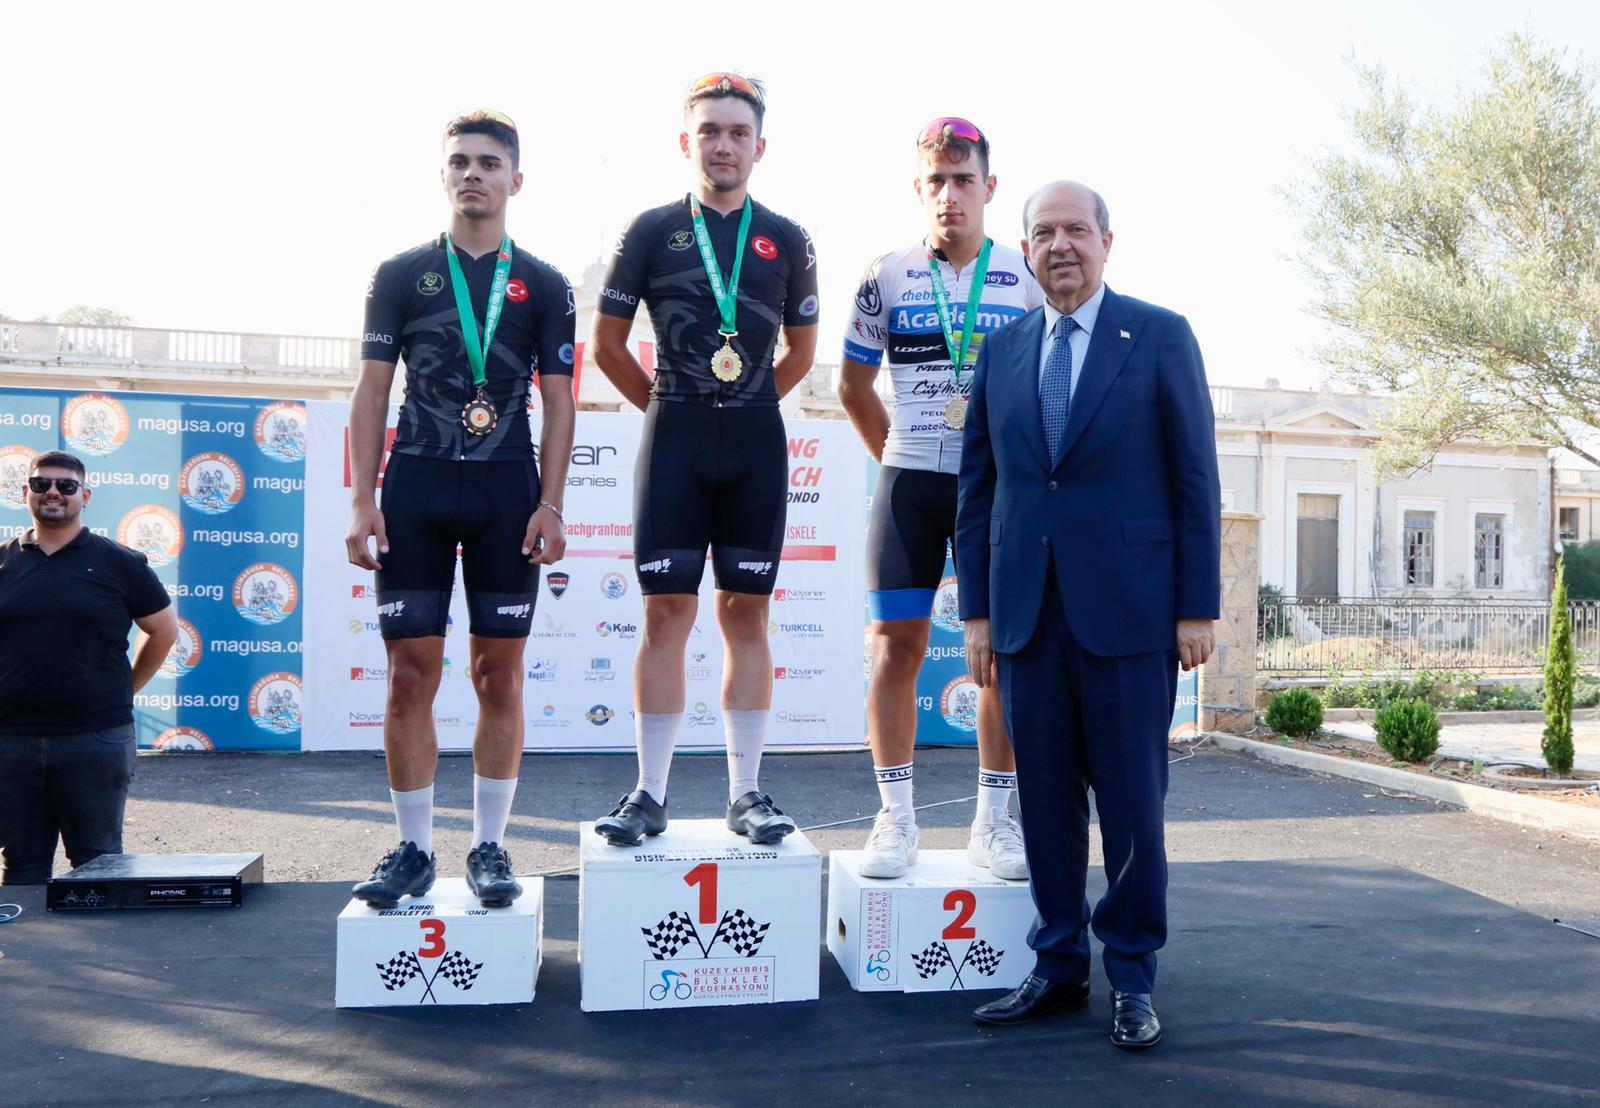 Cumhurbaşkanı Tatar, Long Beach Gran Fondo bisiklet yarışlarında başarılı olanlara ödüllerini takdim etti